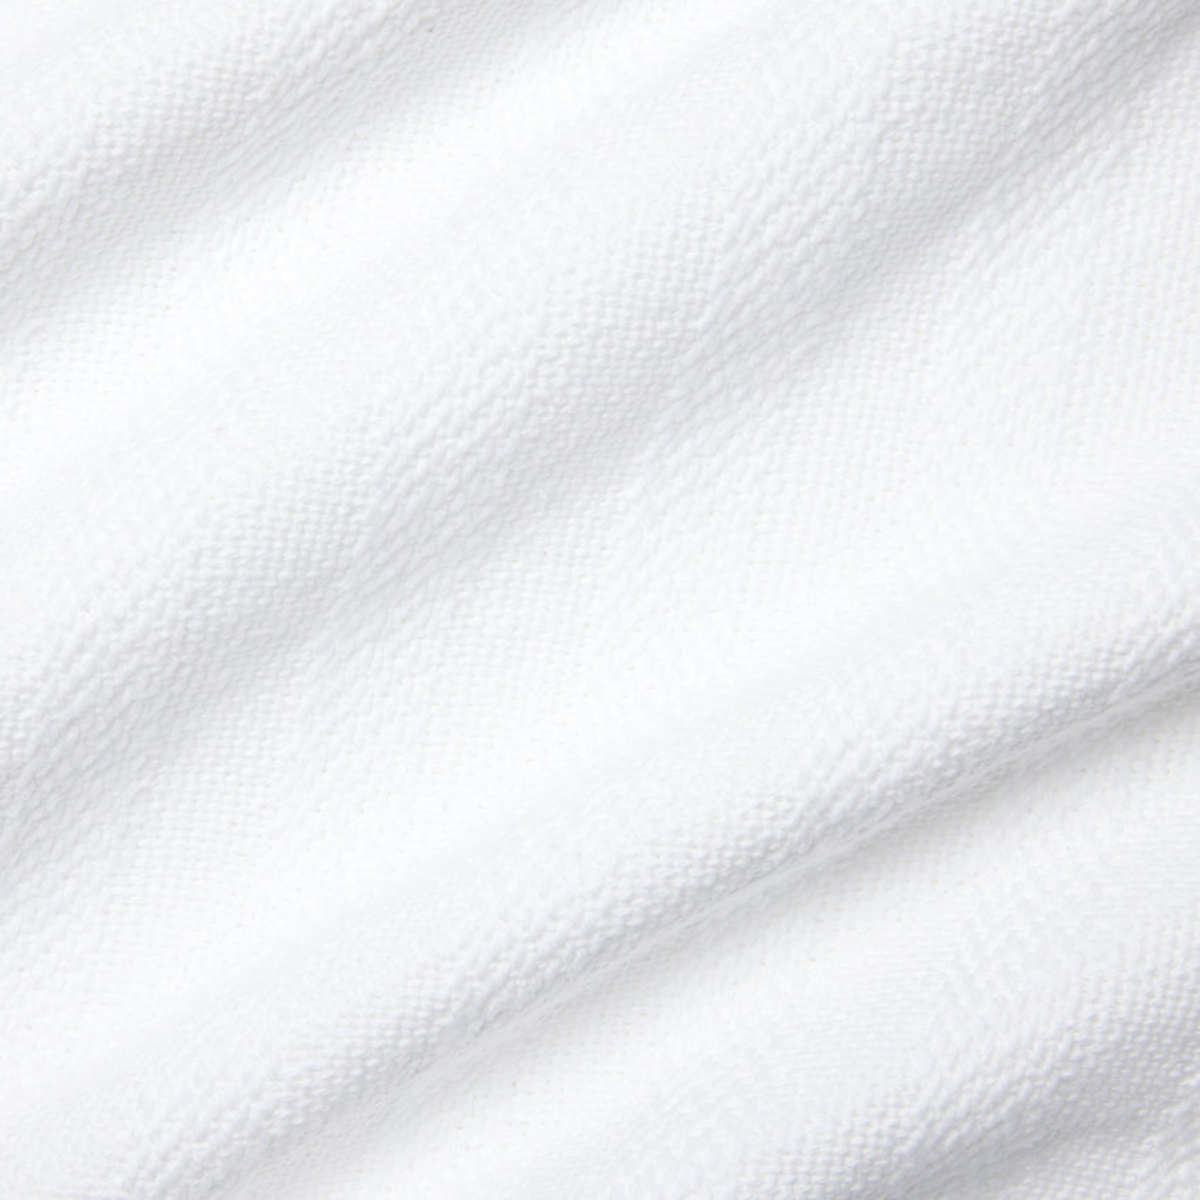 Swatch Sample of Sferra Tavira Blanket in White Color